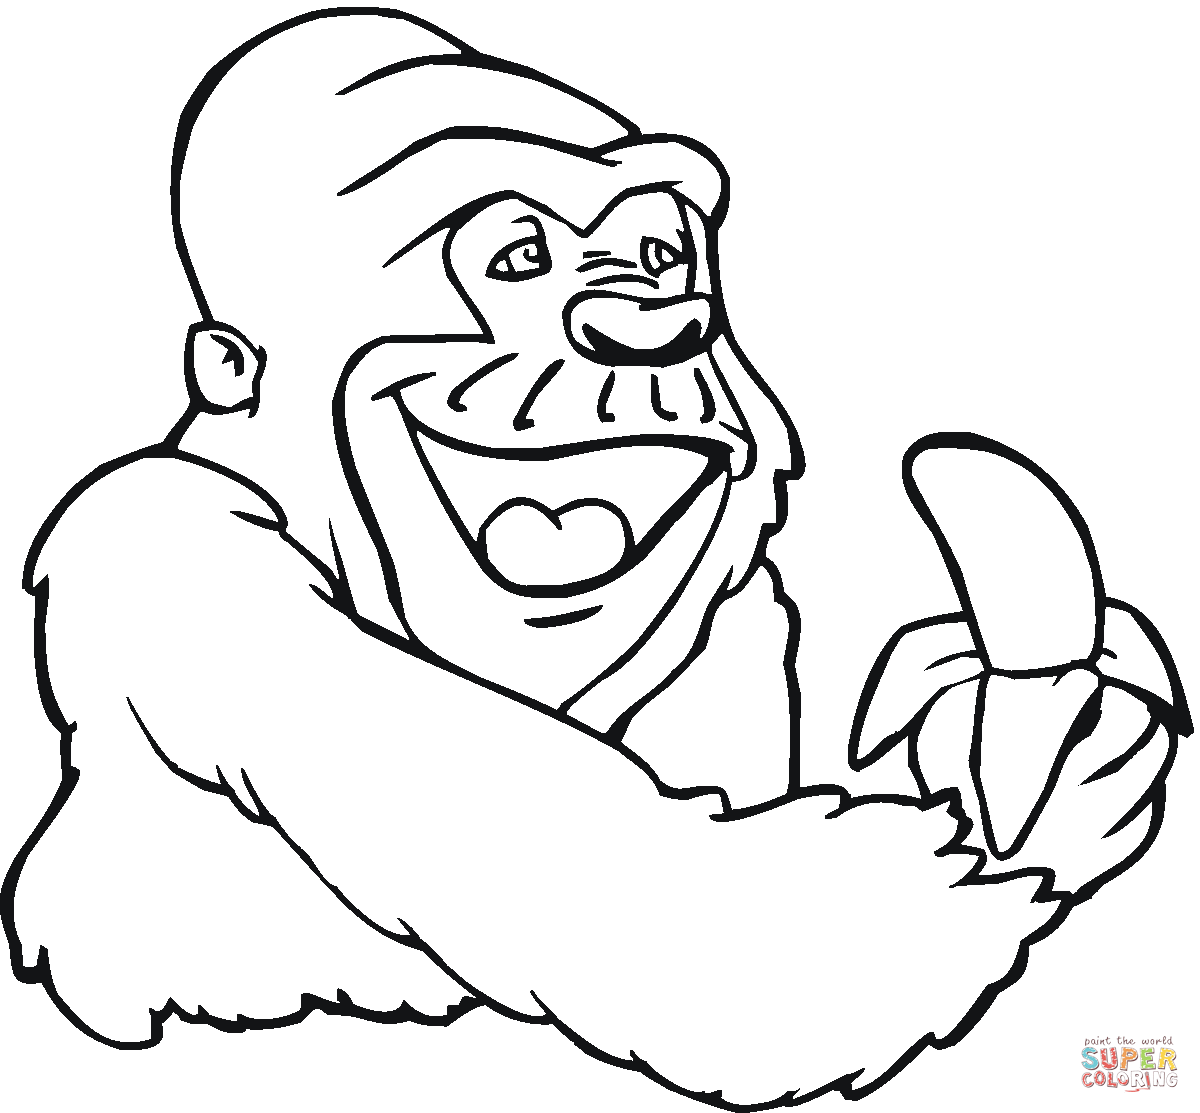 Mountain Gorilla Cartoon - Cliparts.co